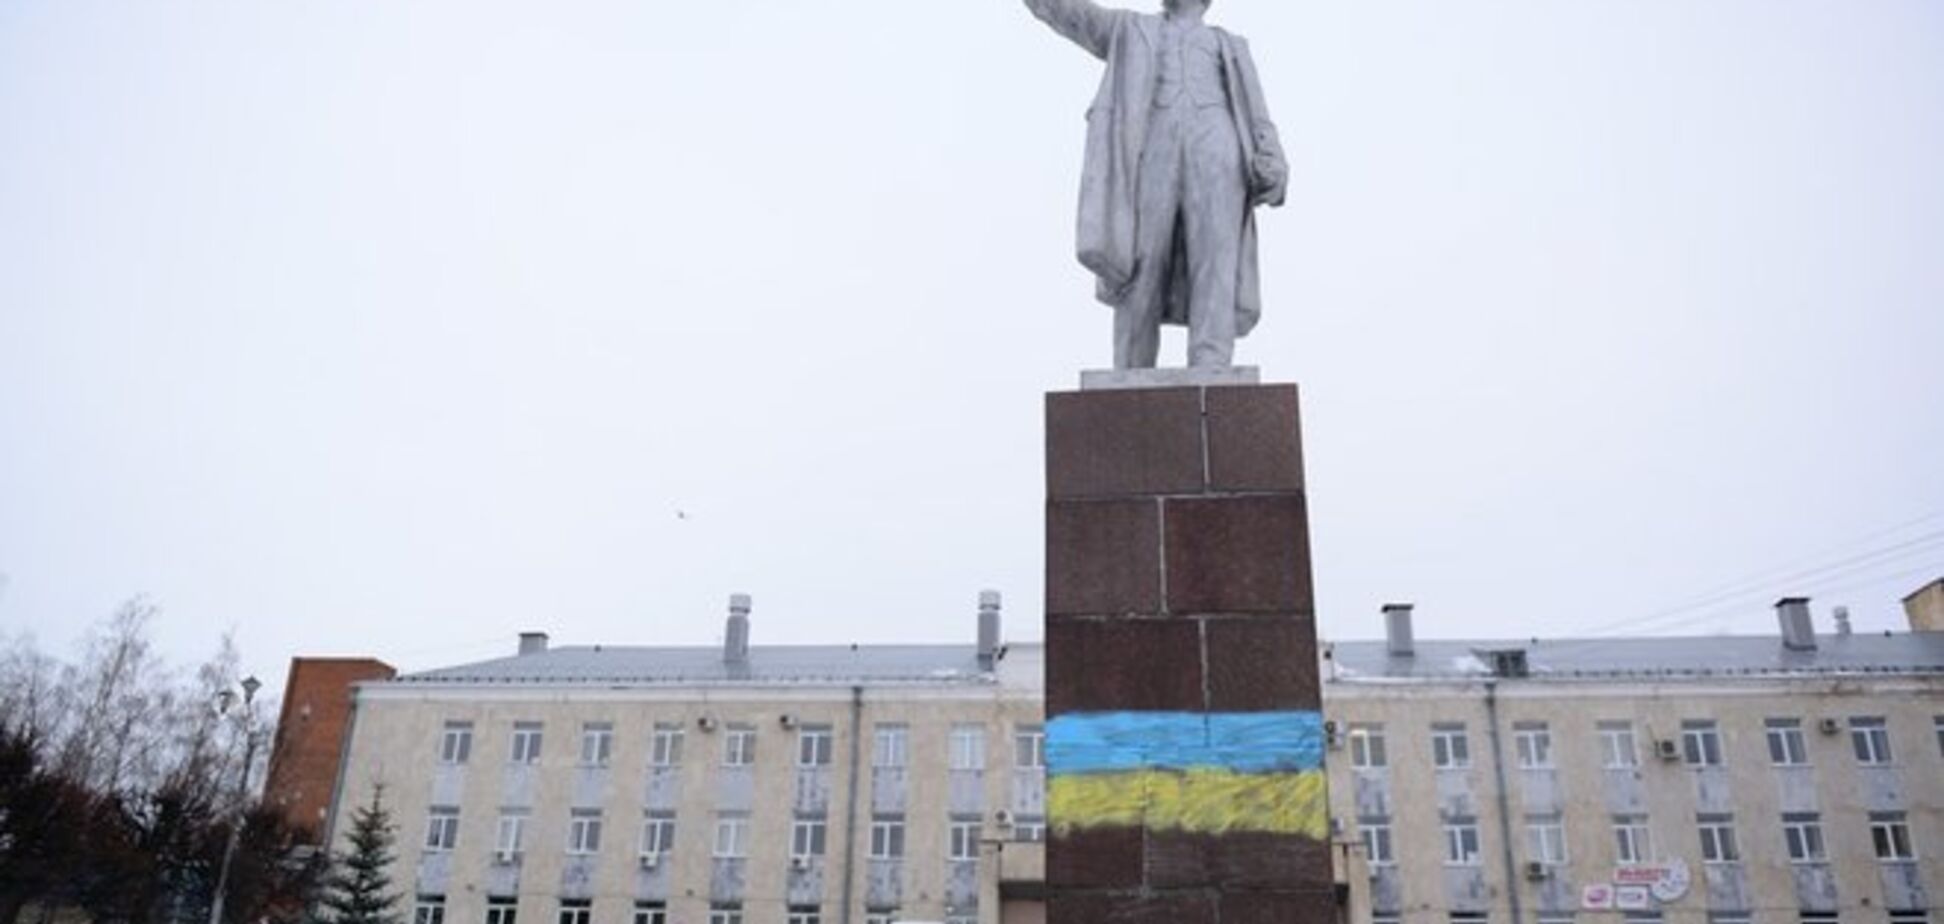 В Чебоксарах на постаменте Ленину появился флаг Украины: опубликовано фото